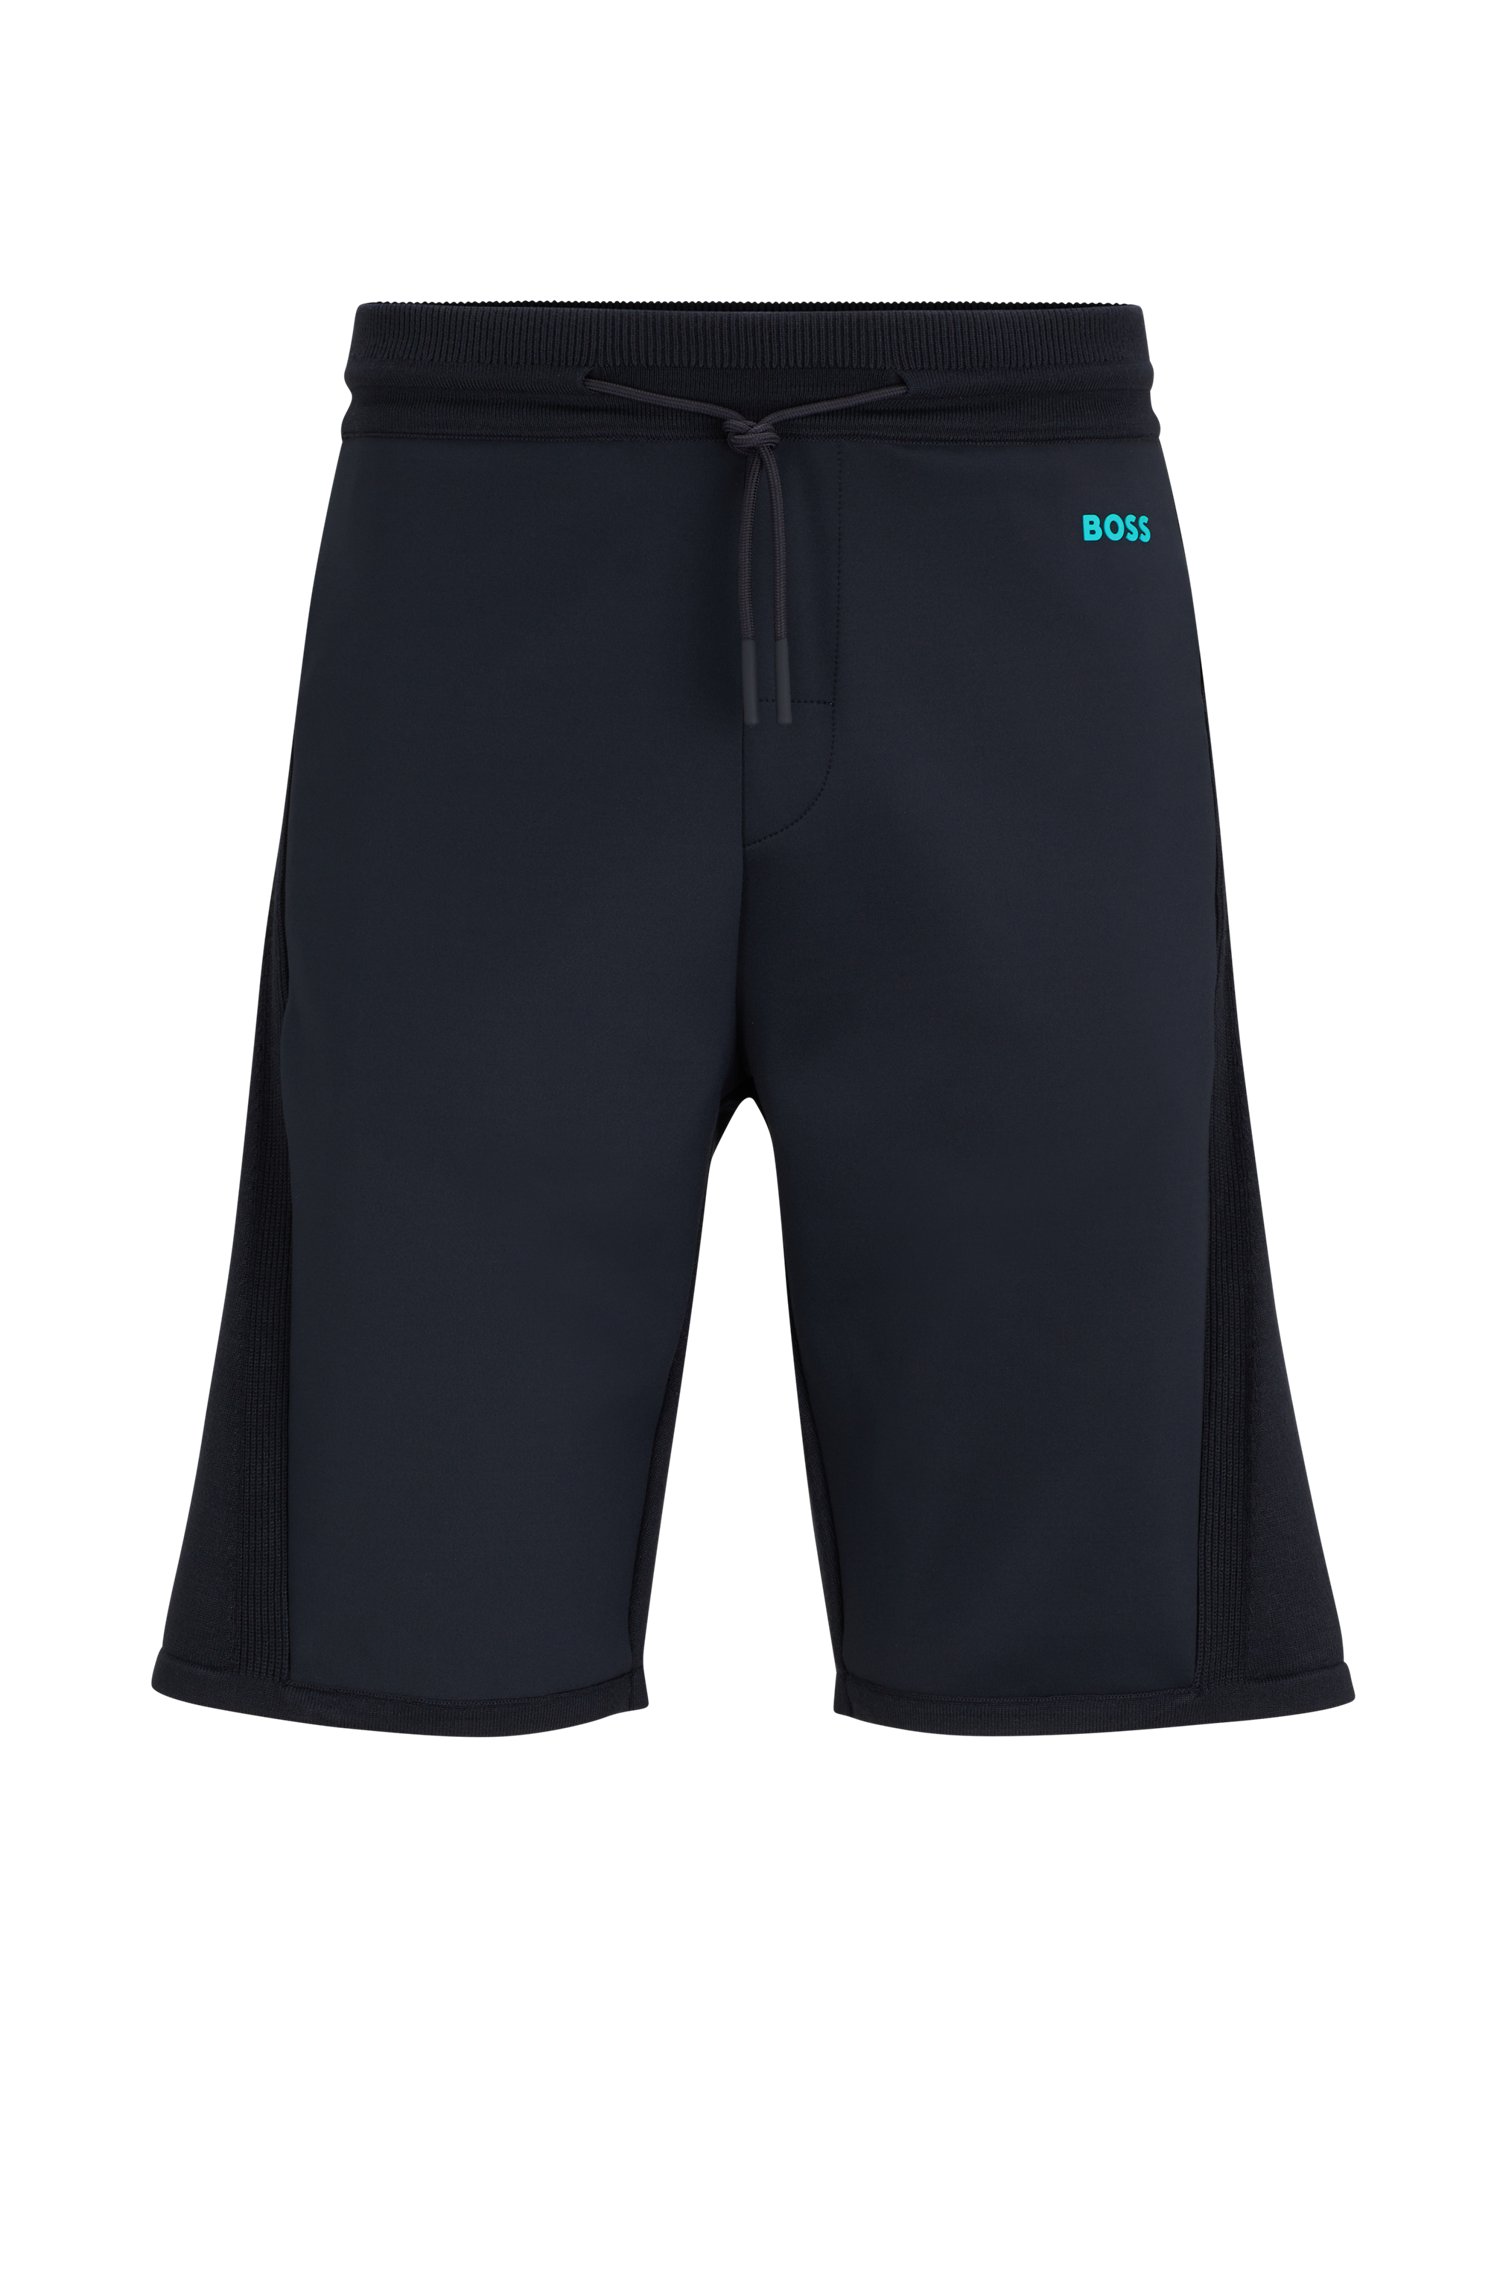 Shorts regular fit con logo estampado en contraste